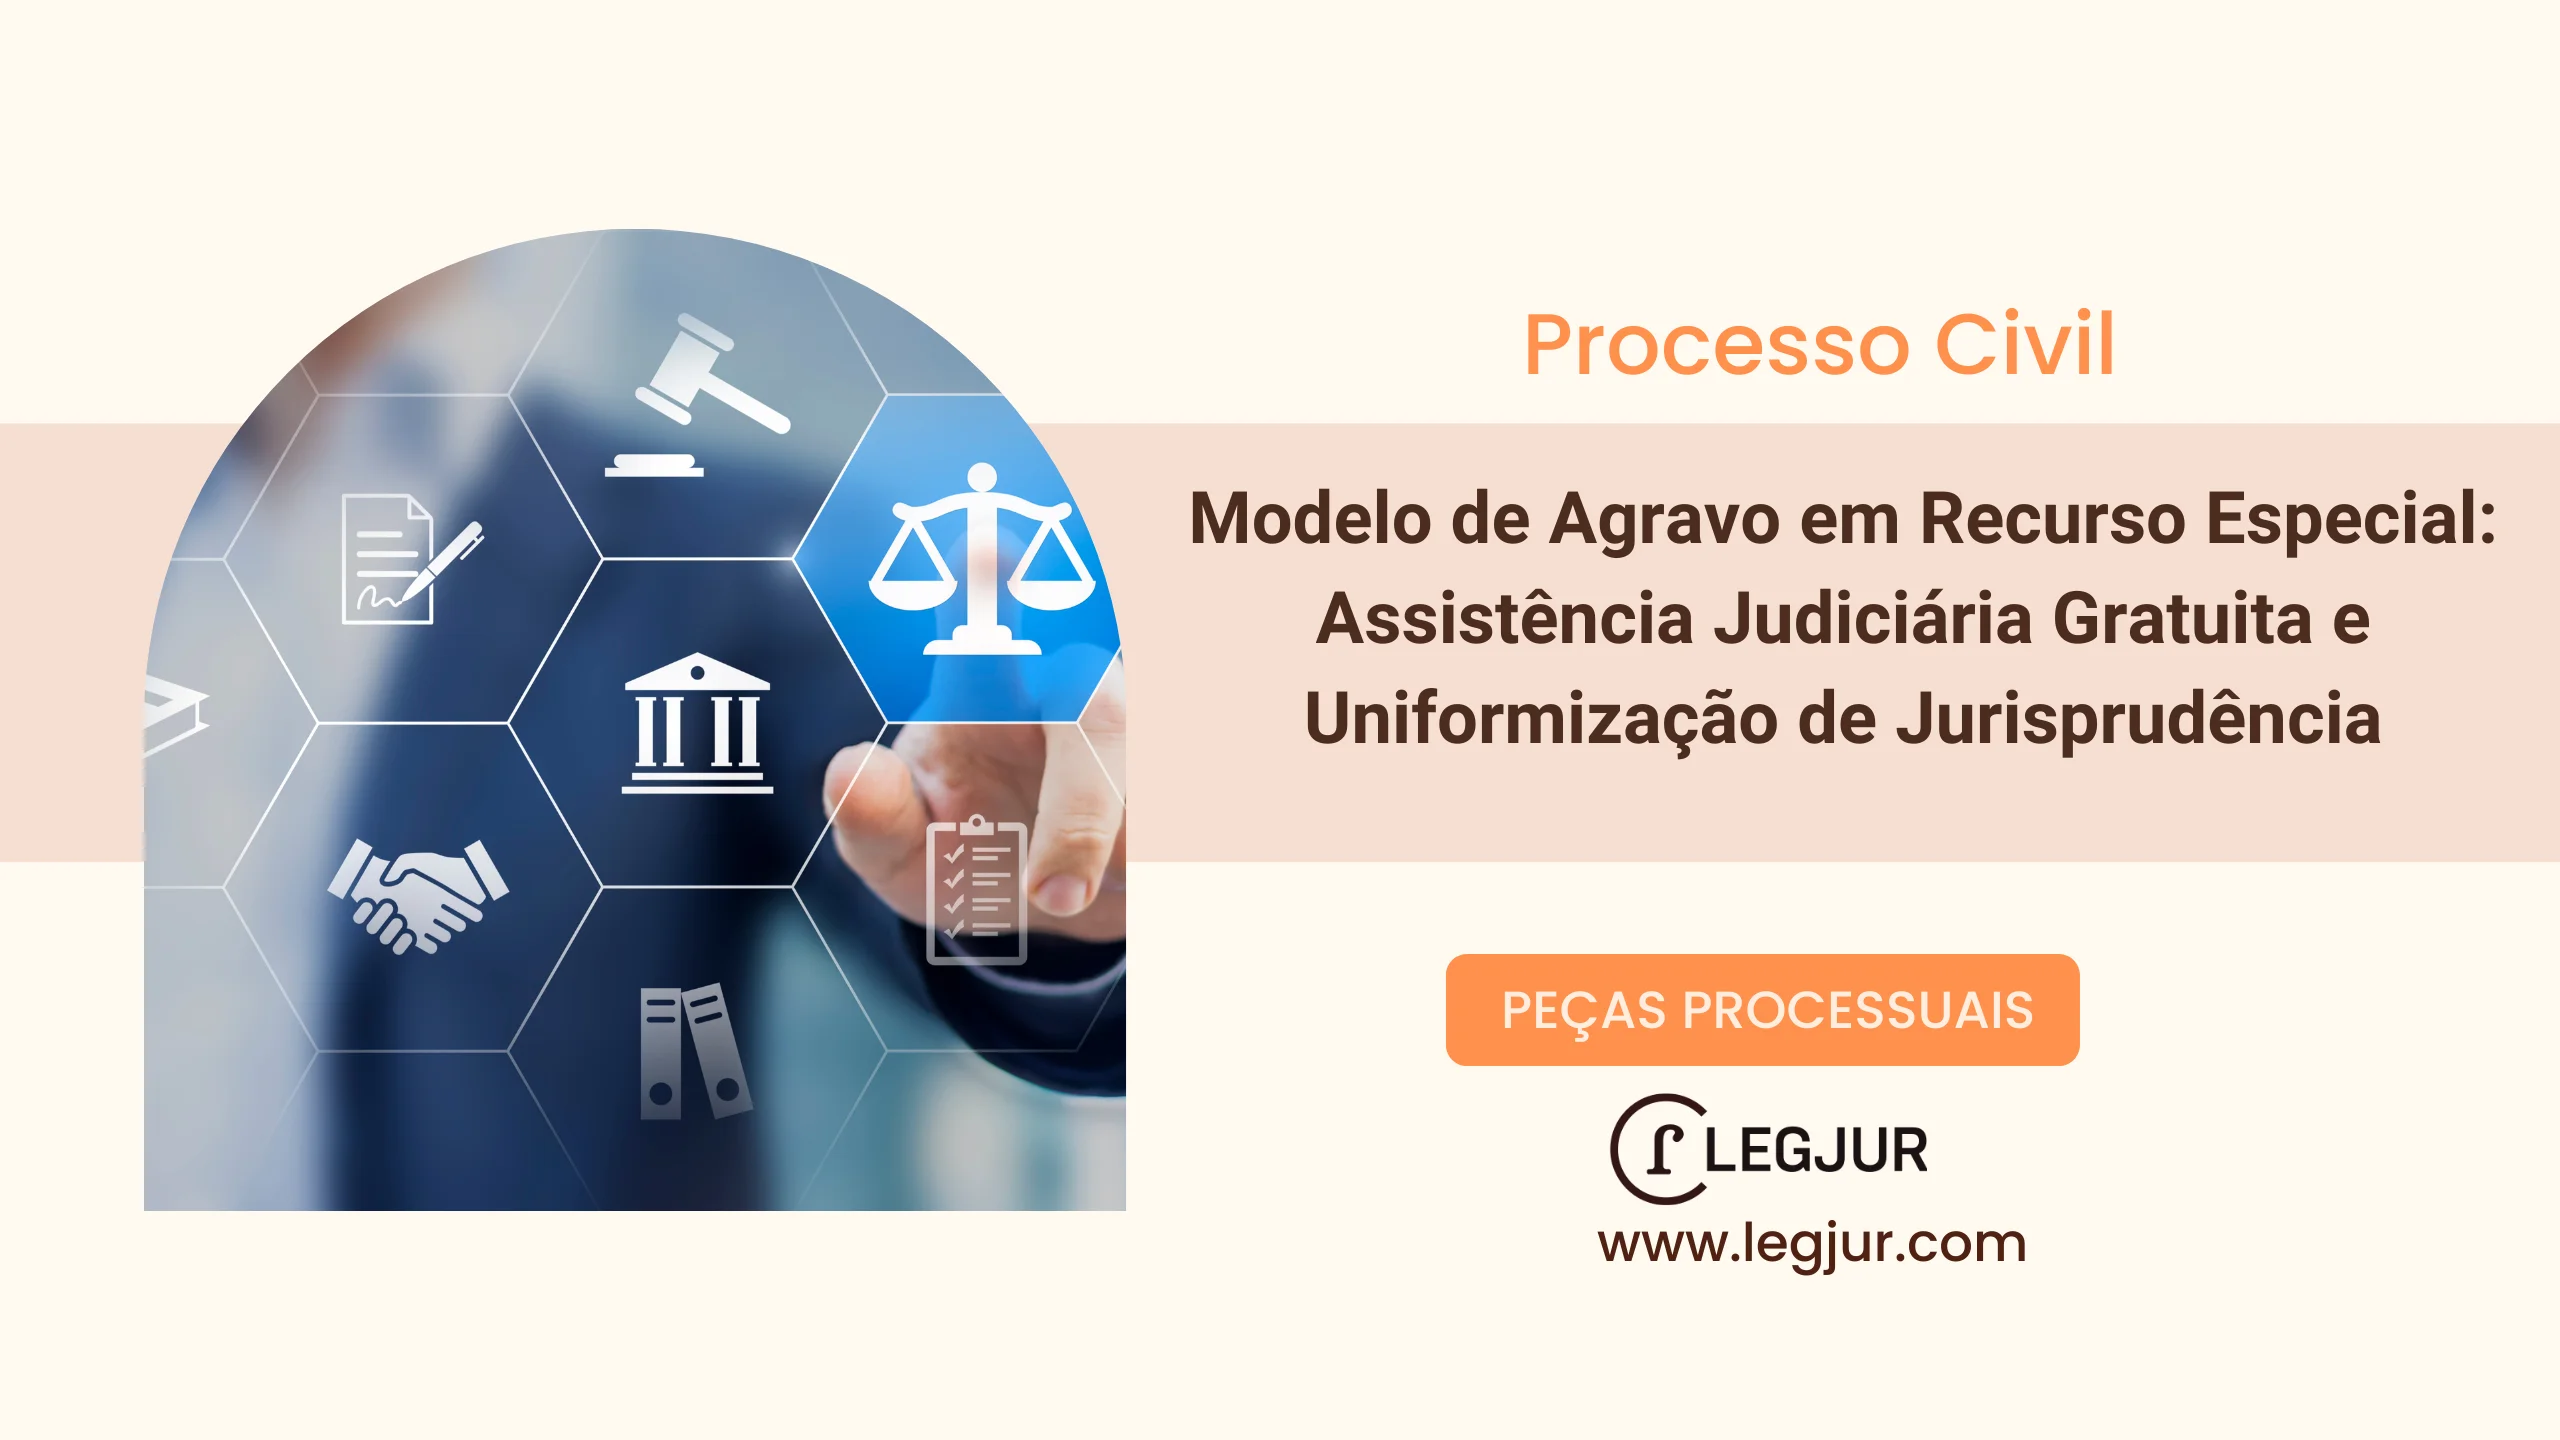 Modelo de Agravo em Recurso Especial: Assistência Judiciária Gratuita e Uniformização de Jurisprudência